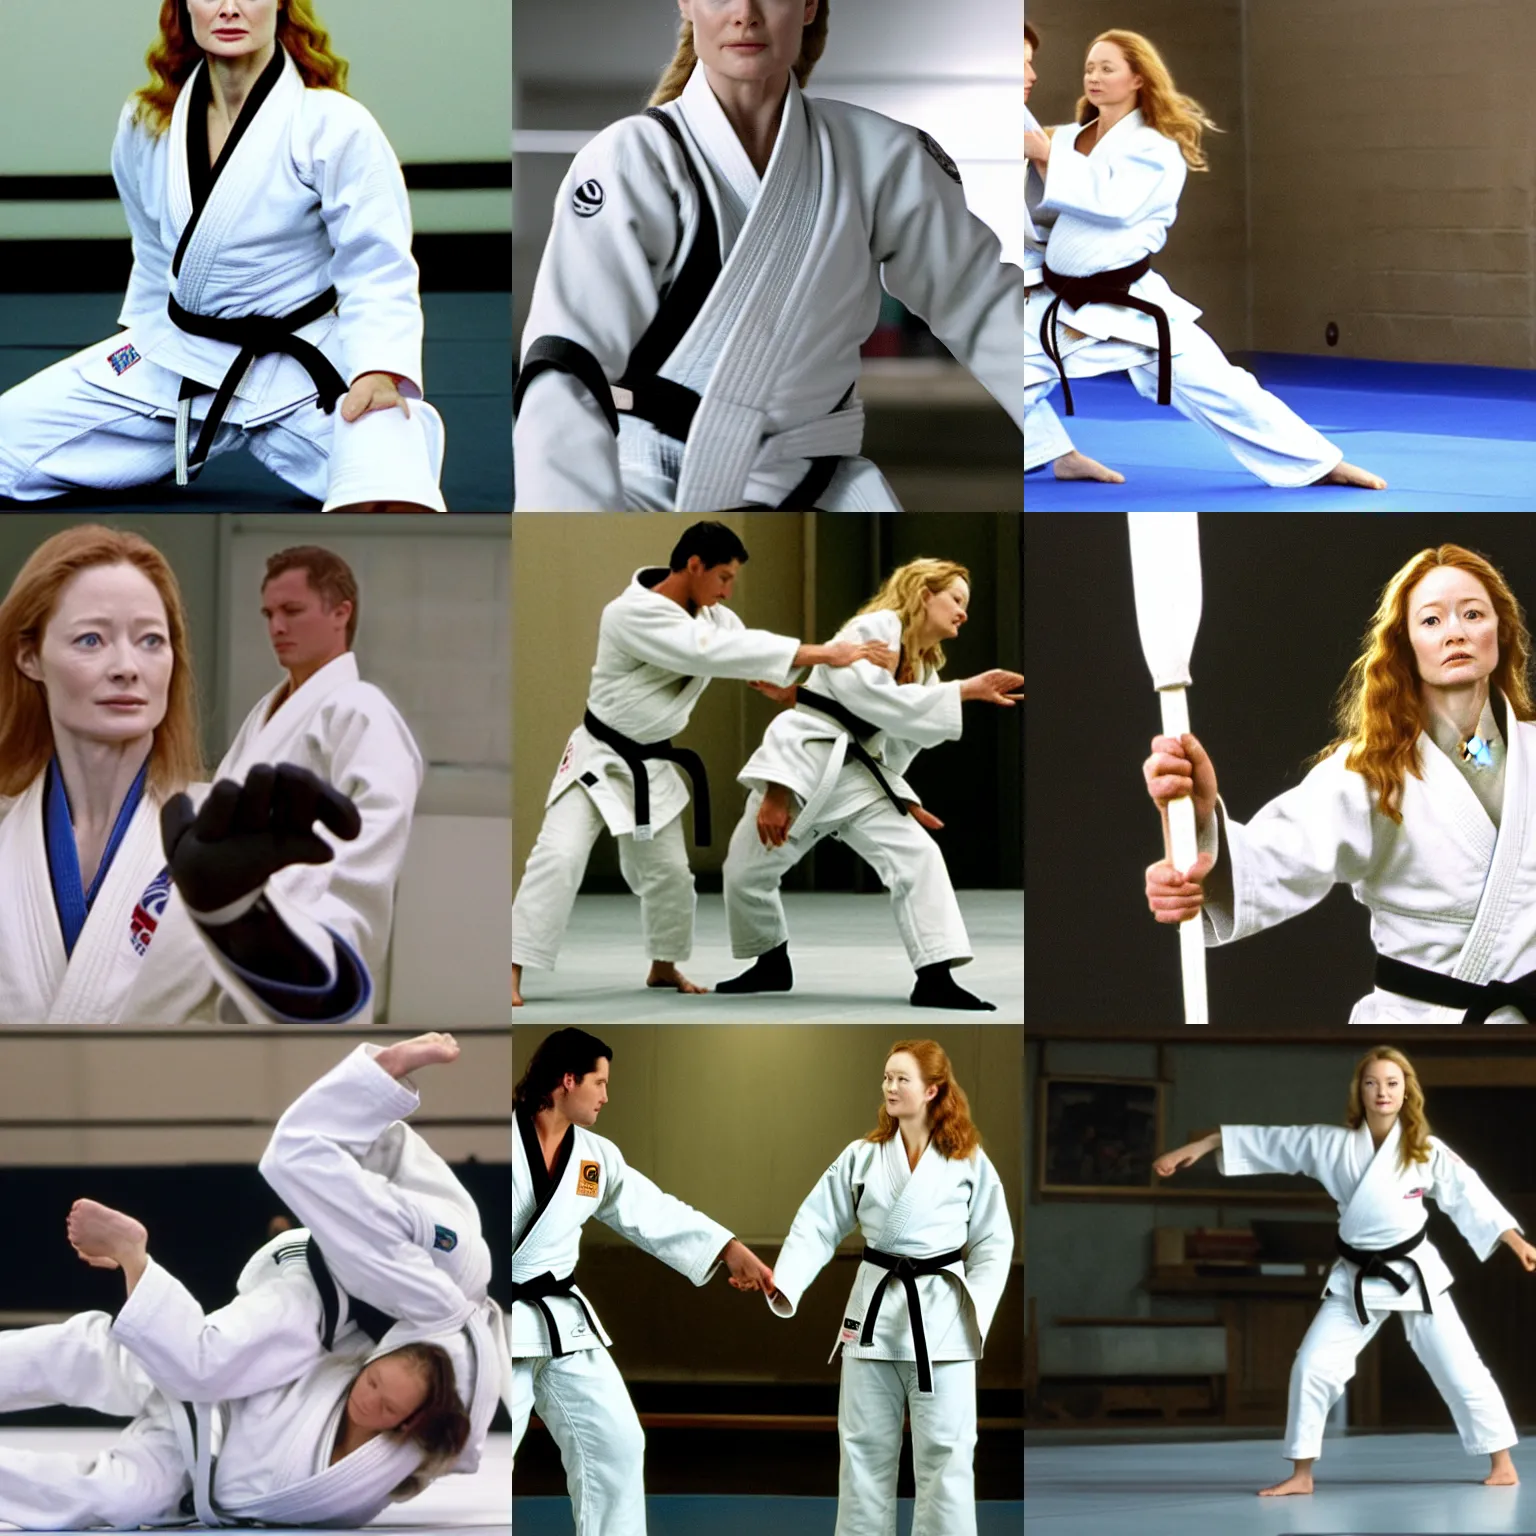 Prompt: Eowyn (Miranda Otto) as a judo black belt, wearing a white gi, in a dojo